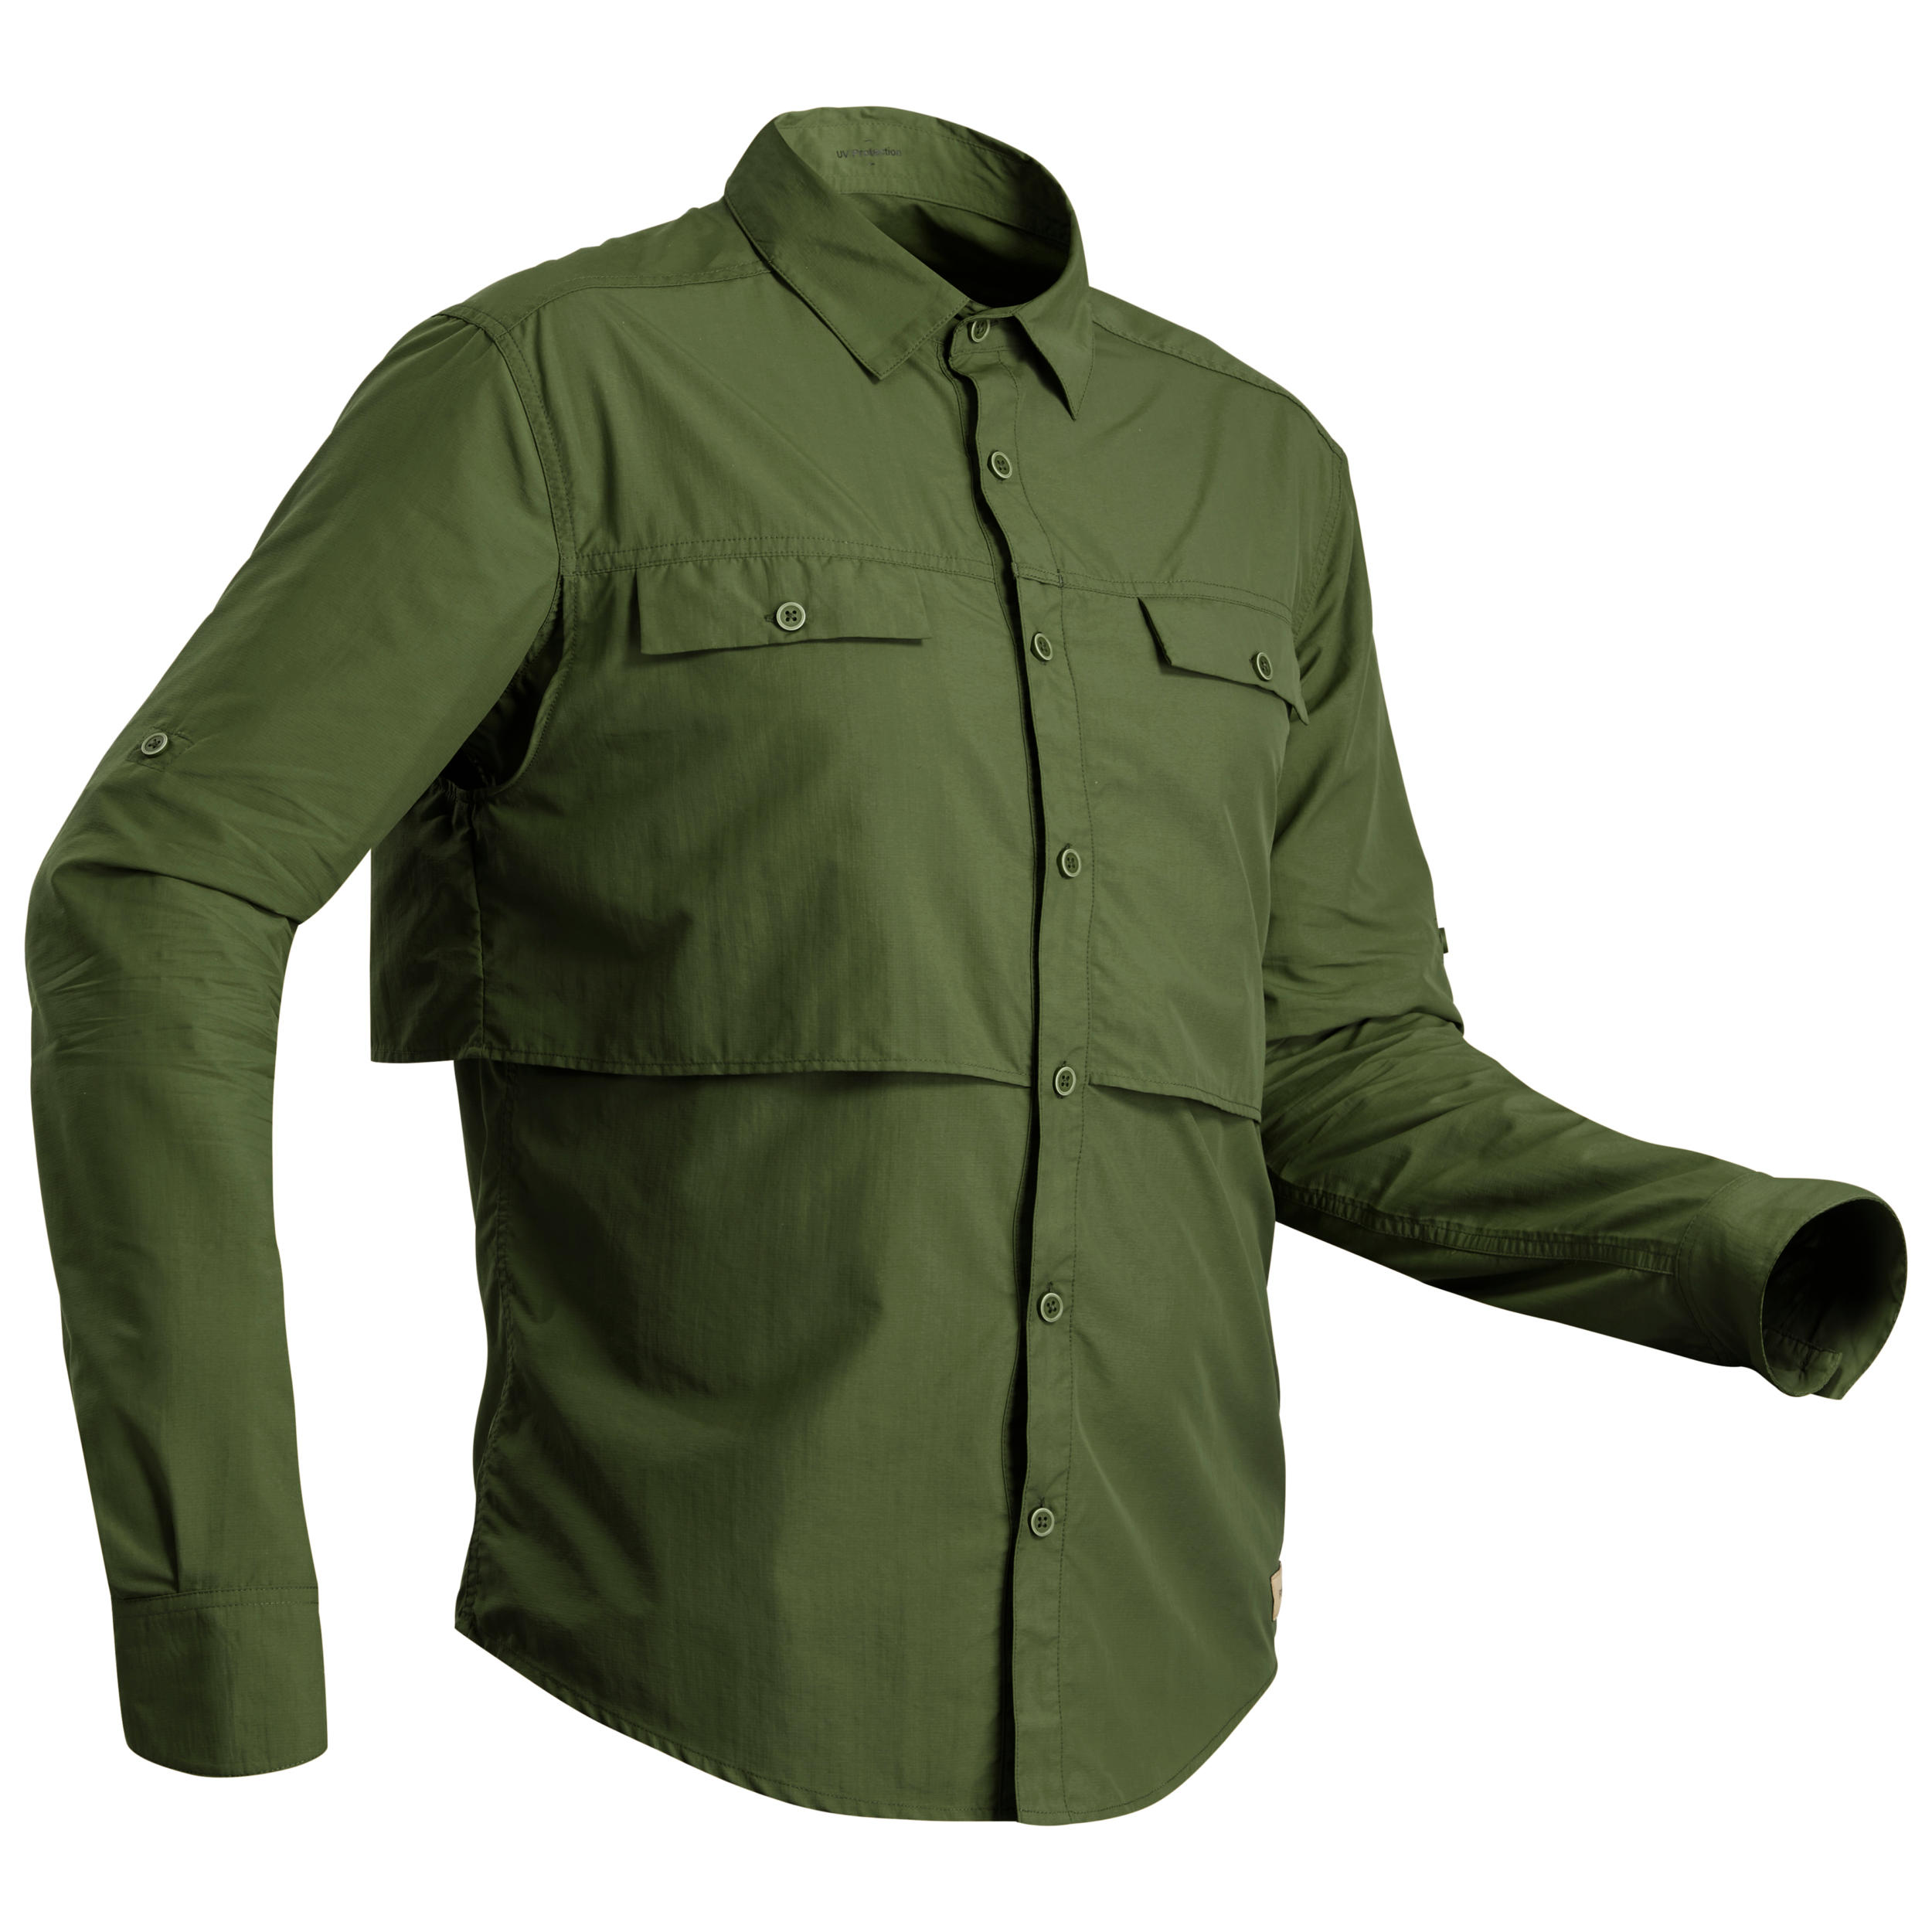 FORCLAZ Men's long-sleeved anti-UV desert trekking shirt - DESERT 900 - Dark green